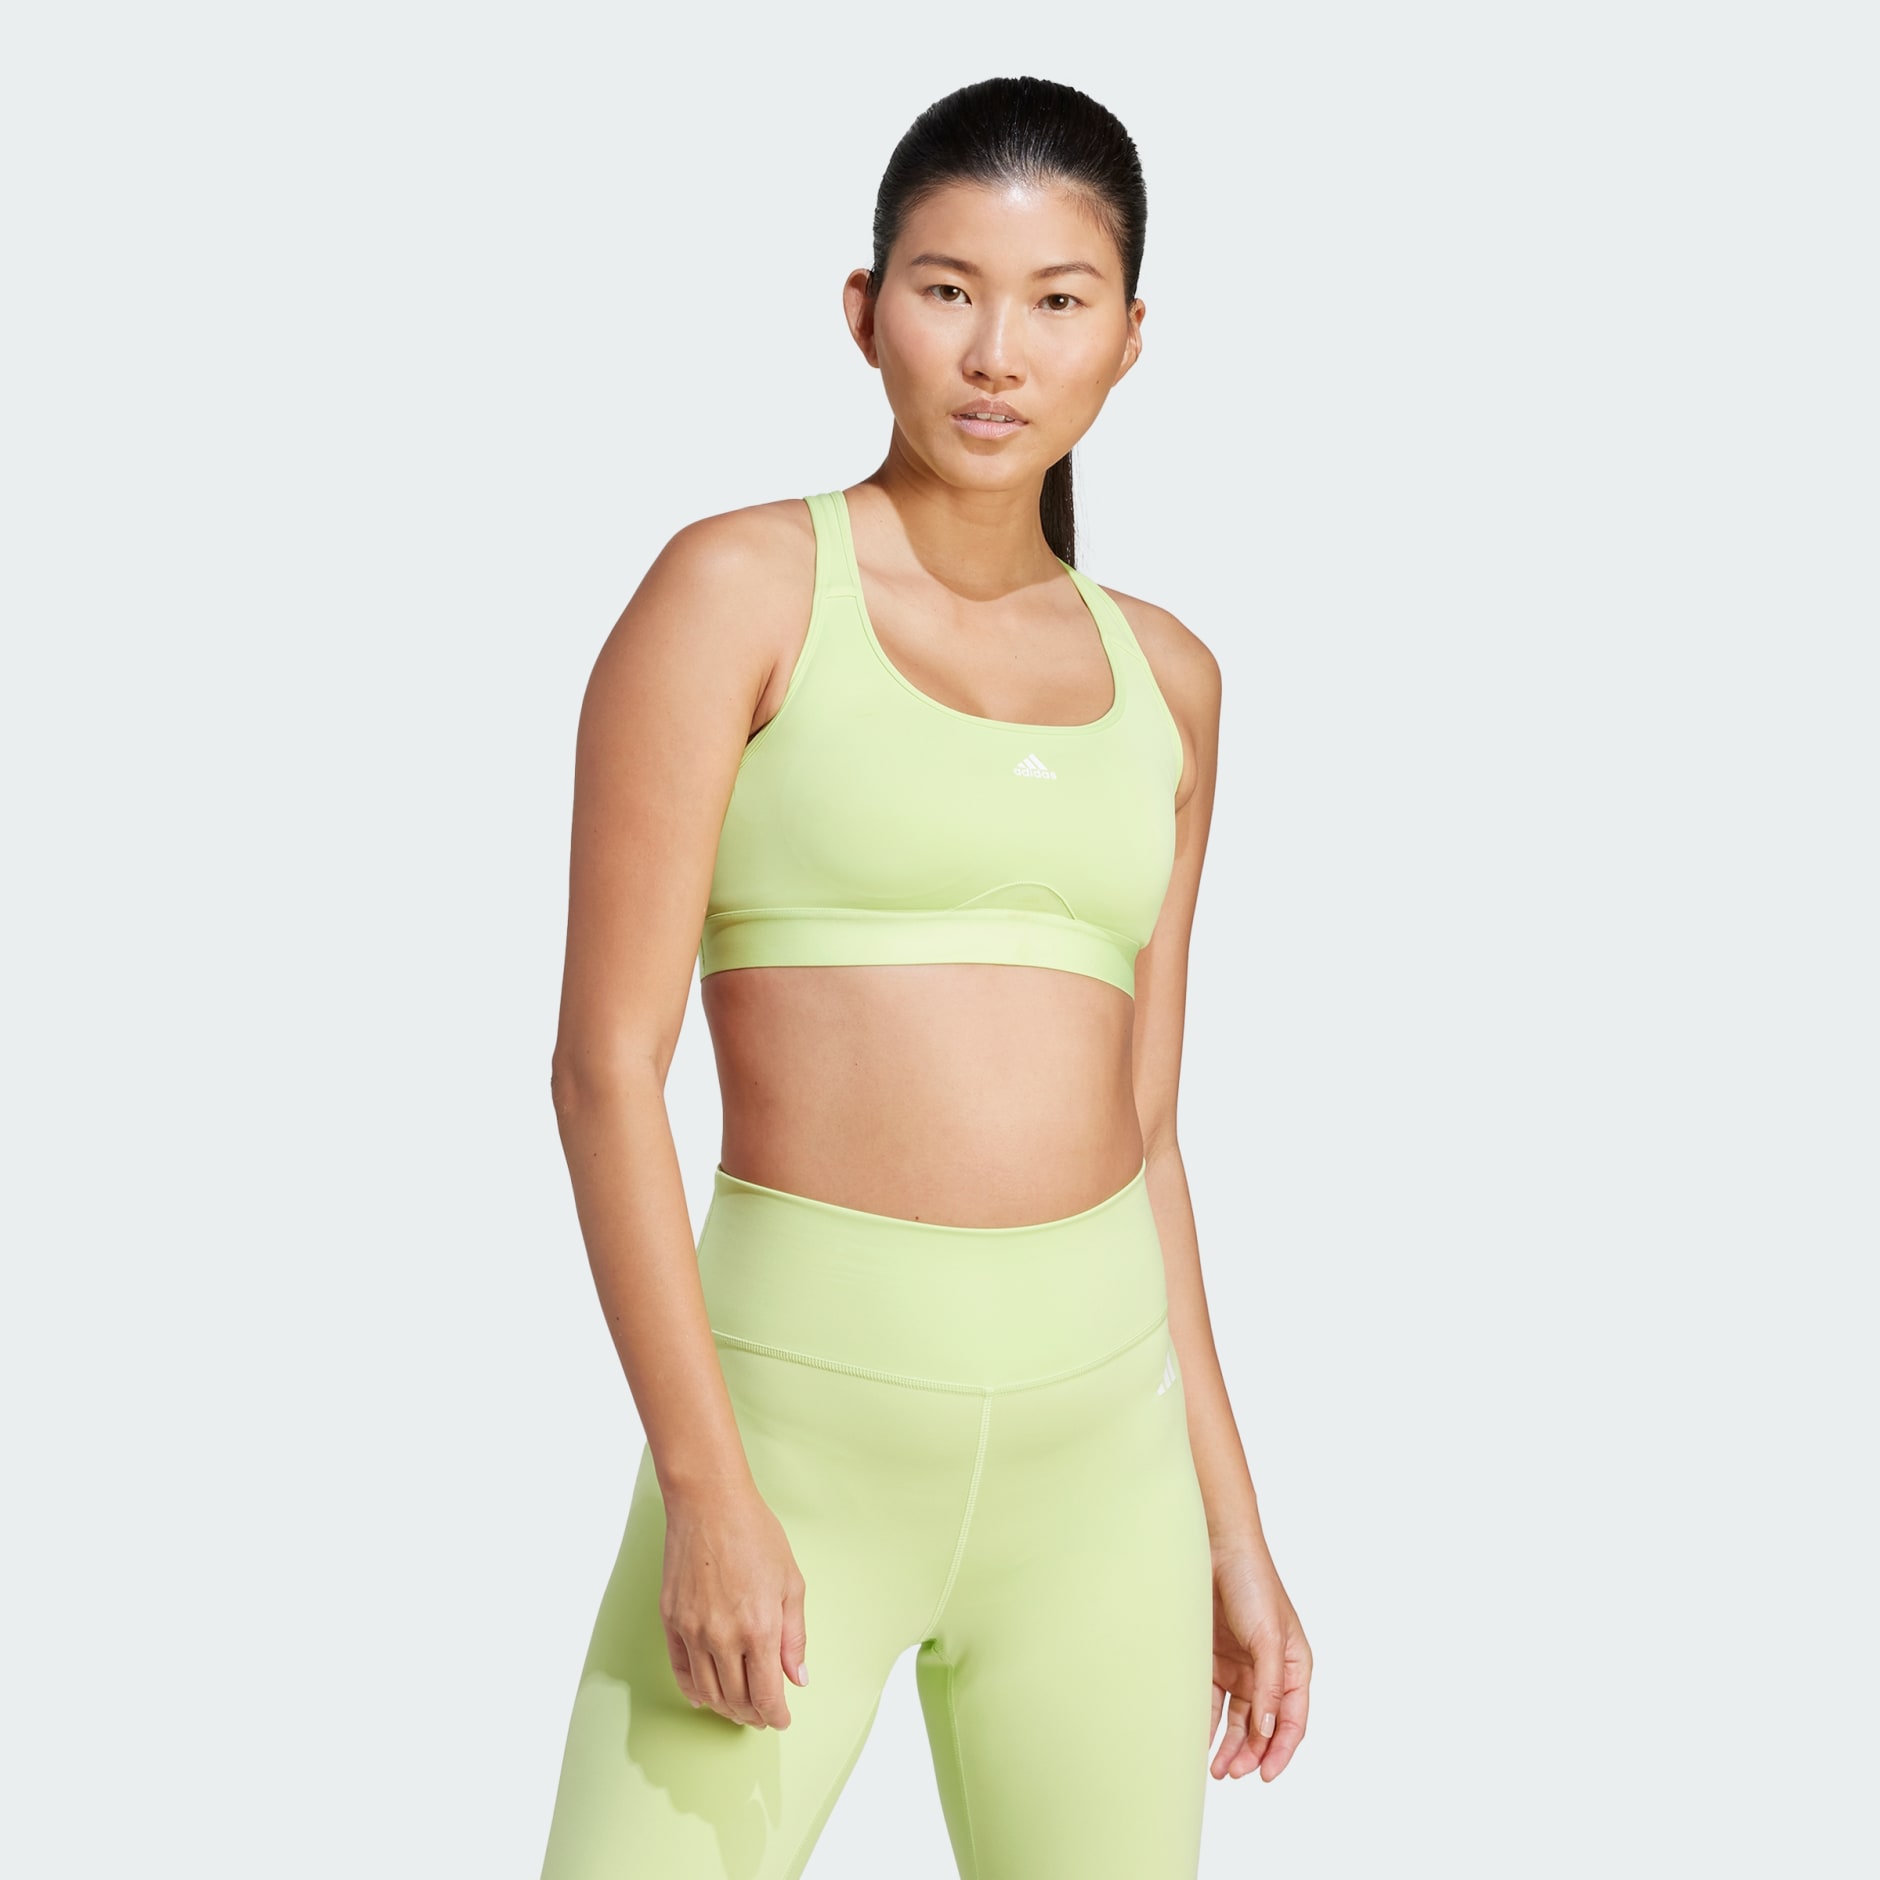 Nike Yoga Dri Fit Swoosh Medium Sports Bra Green